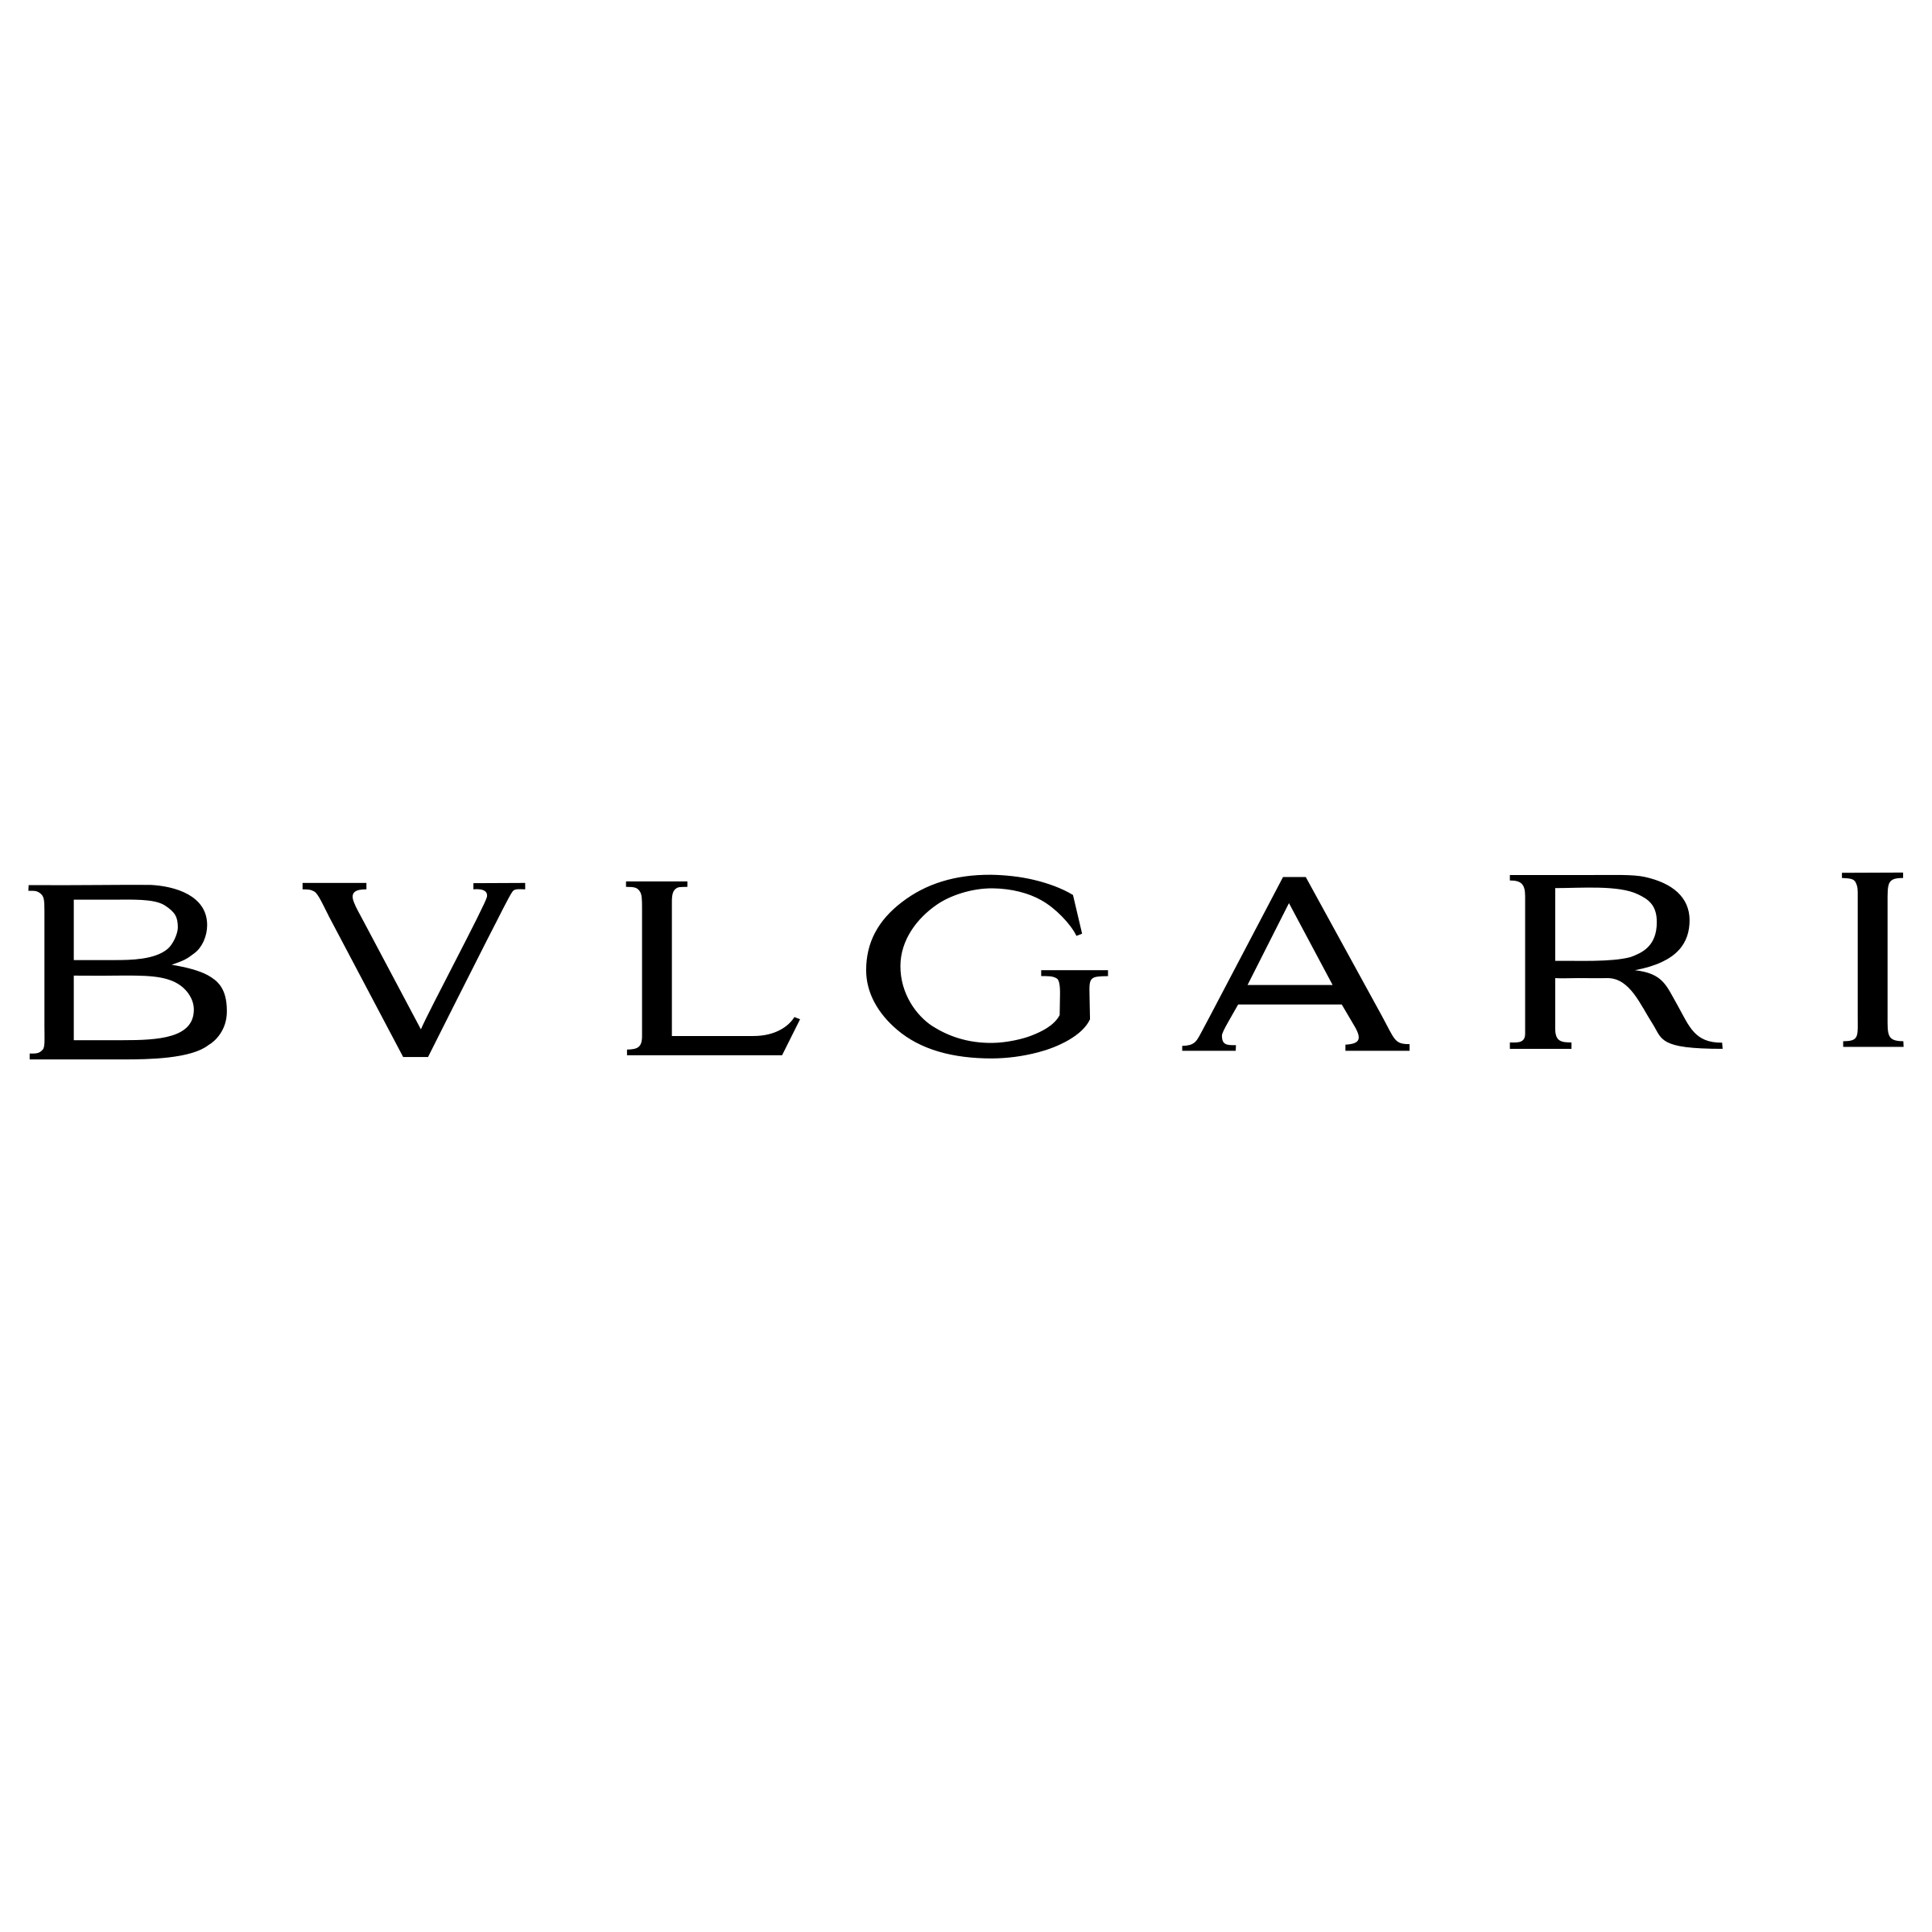 Bvlgari Logo - Bvlgari Logo PNG Transparent & SVG Vector - Freebie Supply